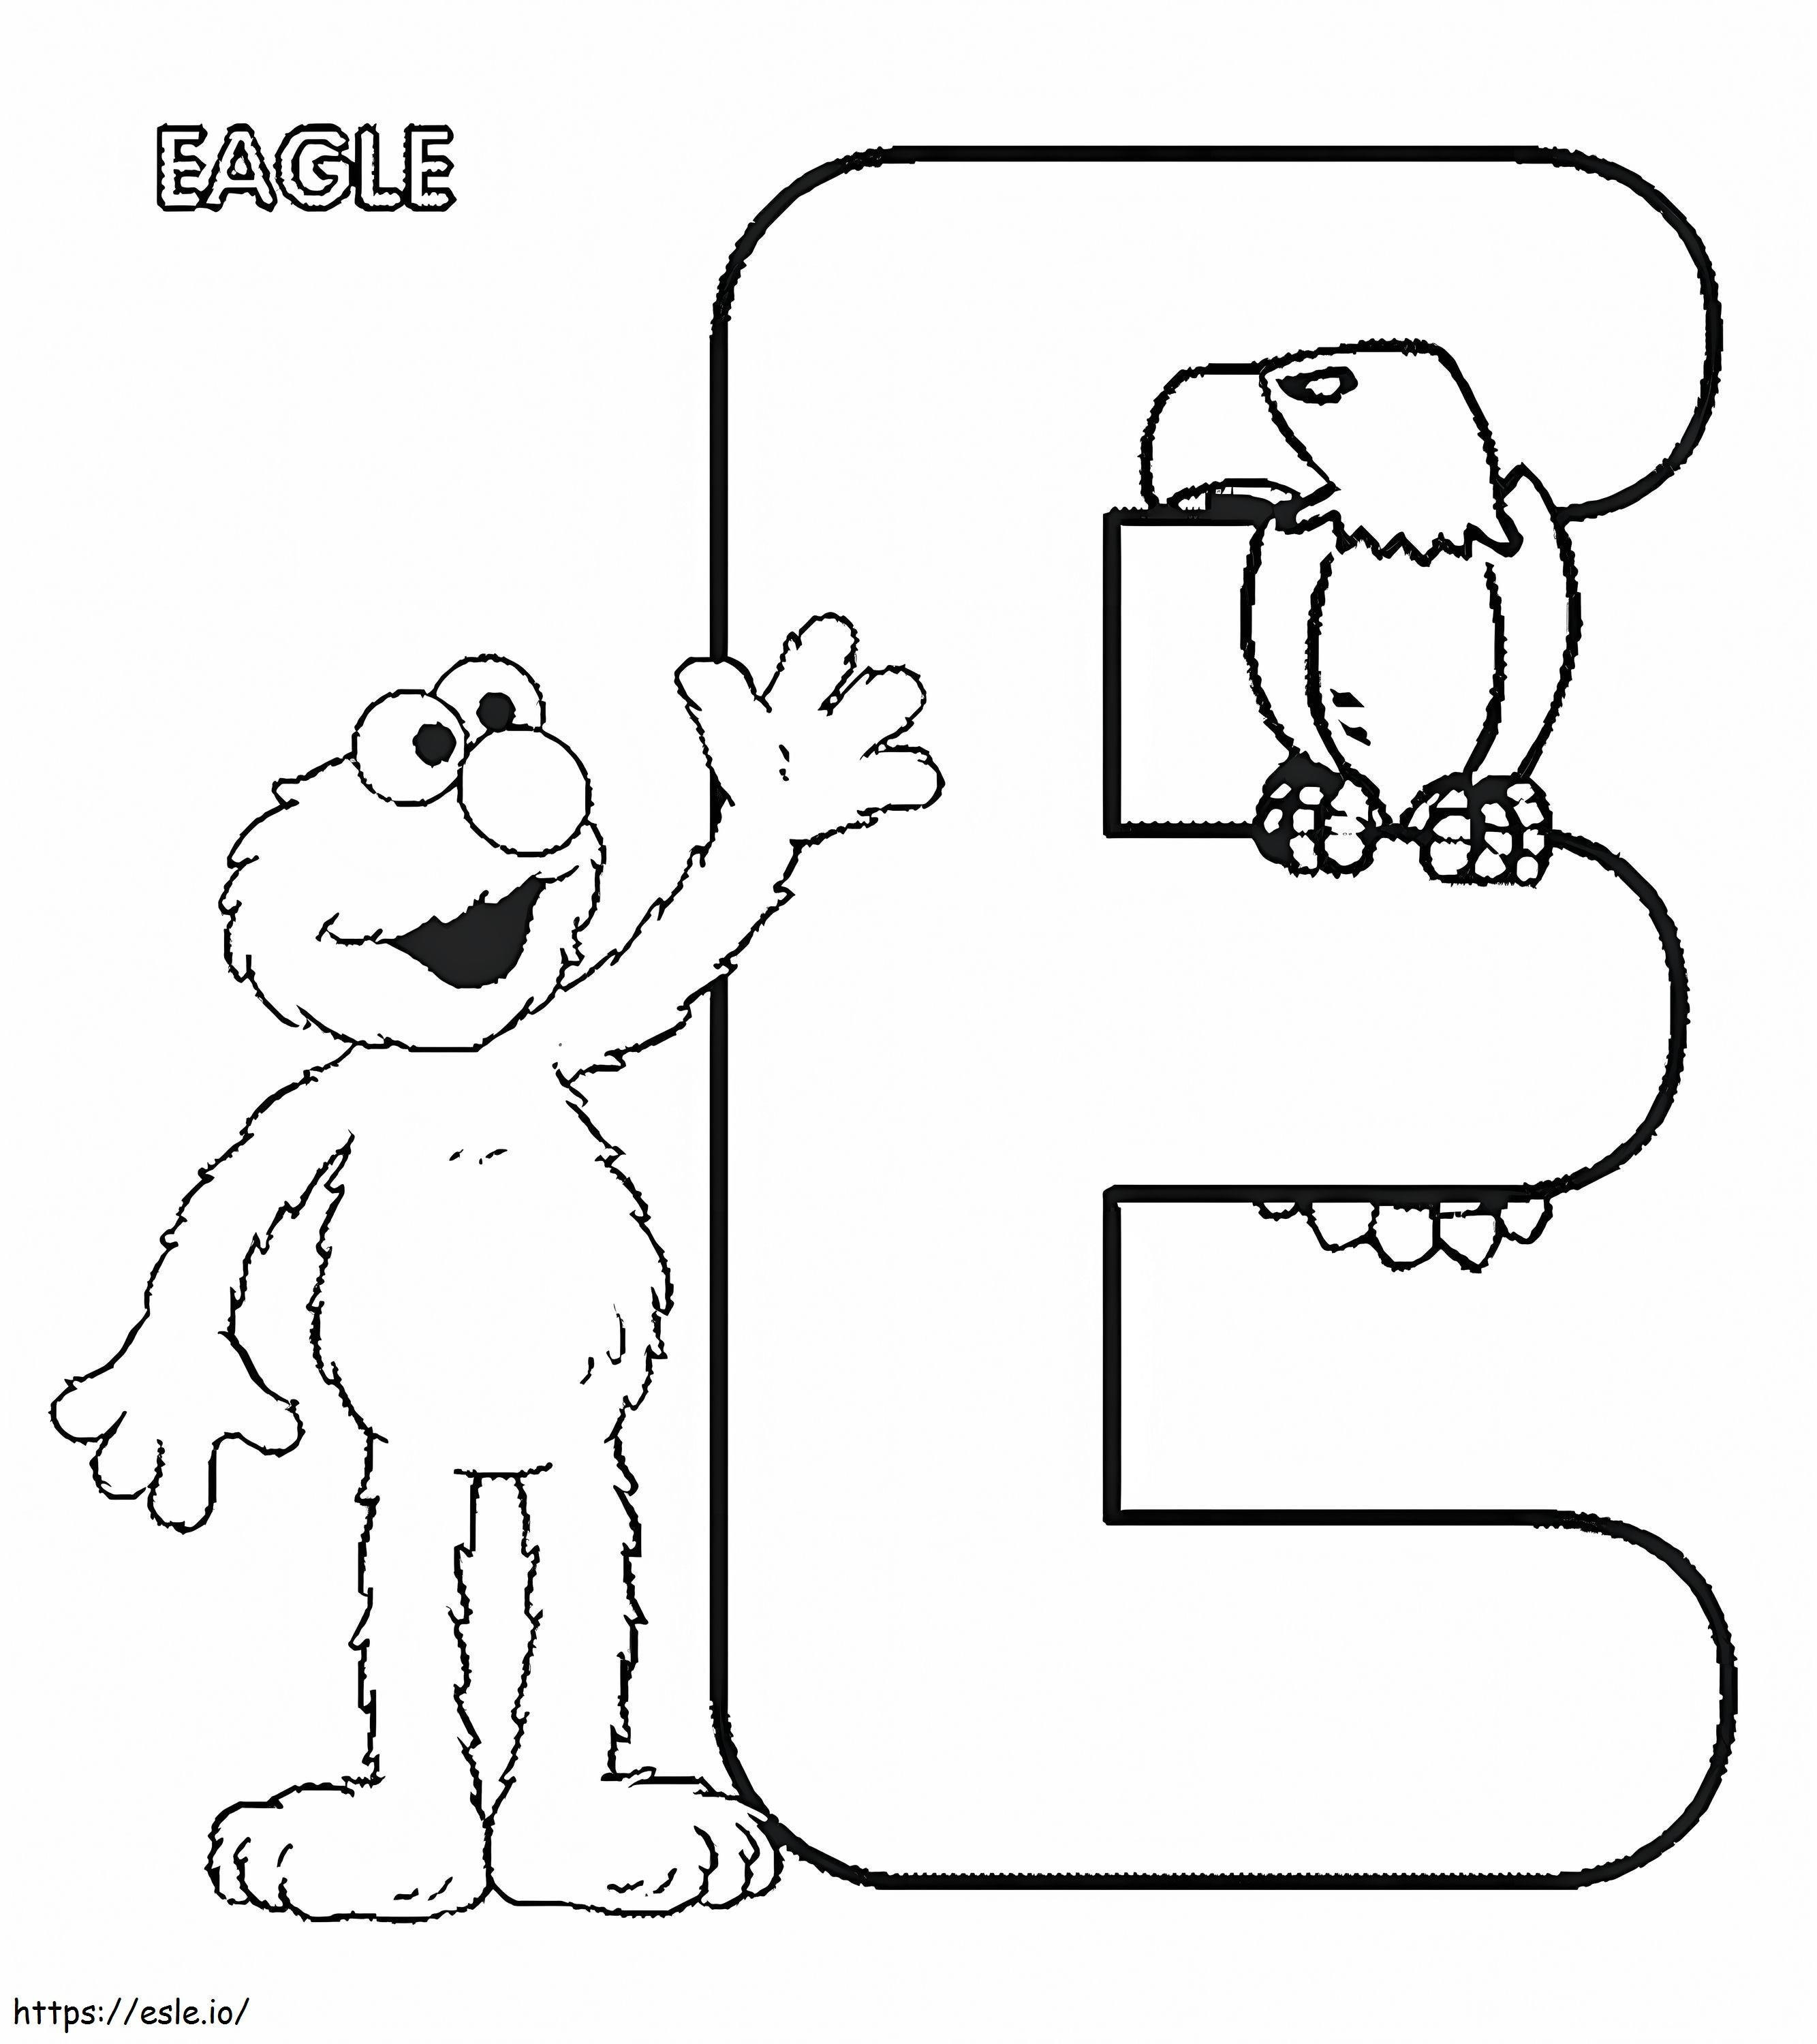 Coloriage E pour Elmo et Eagle à imprimer dessin